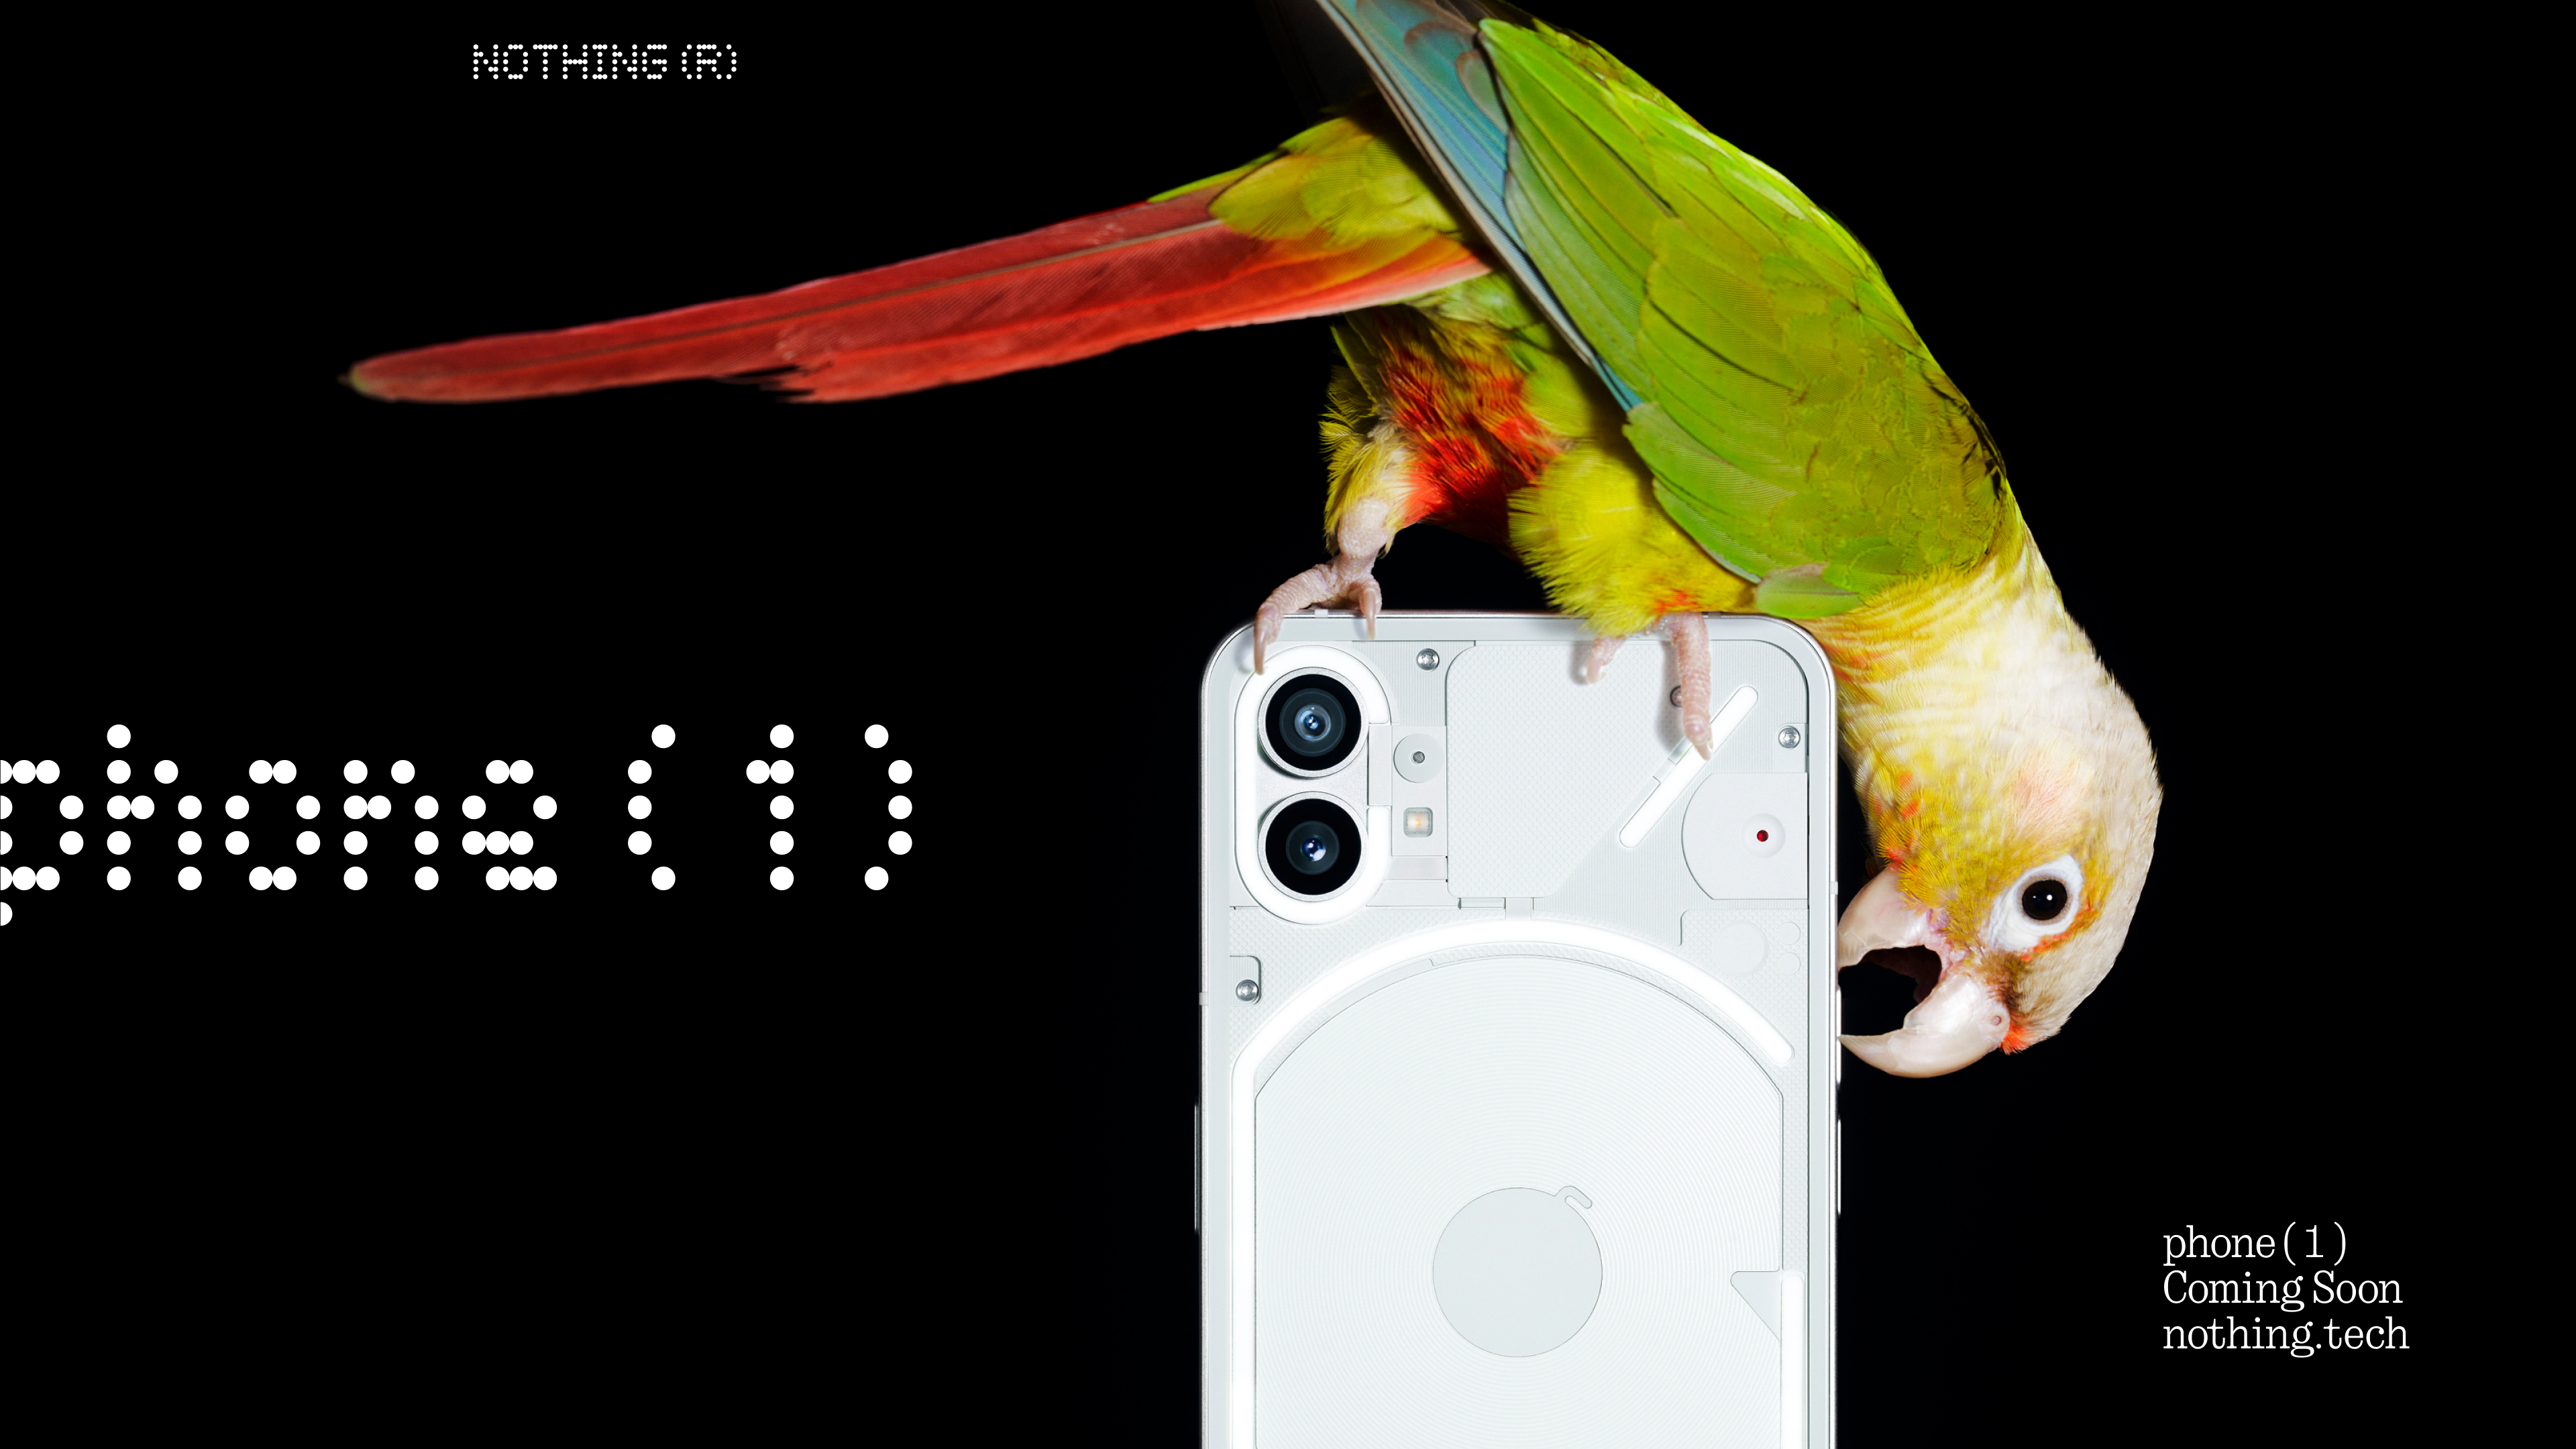 Panneau arrière transparent et double caméra : Rien ne montrait le design du smartphone Phone (1)